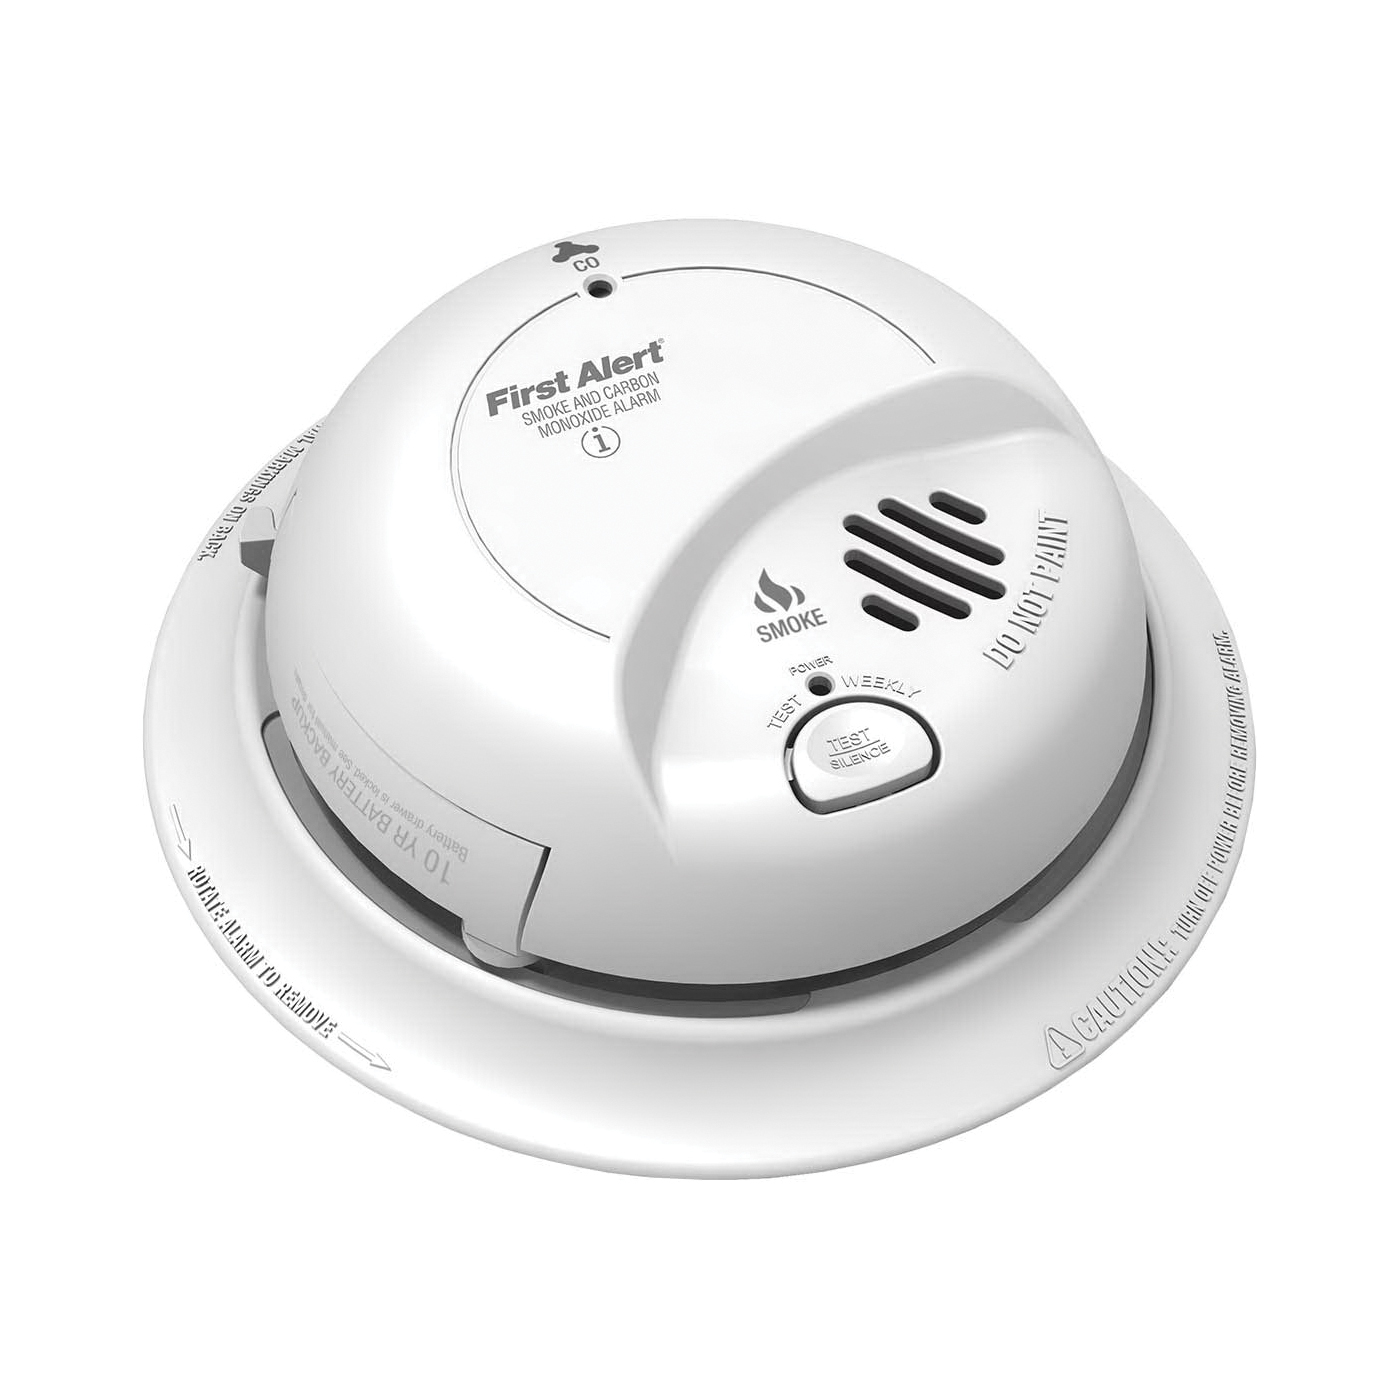 First Alert SC9120LBL Smoke and Carbon Monoxide Alarm, 85 dB, Electrochemical Sensor